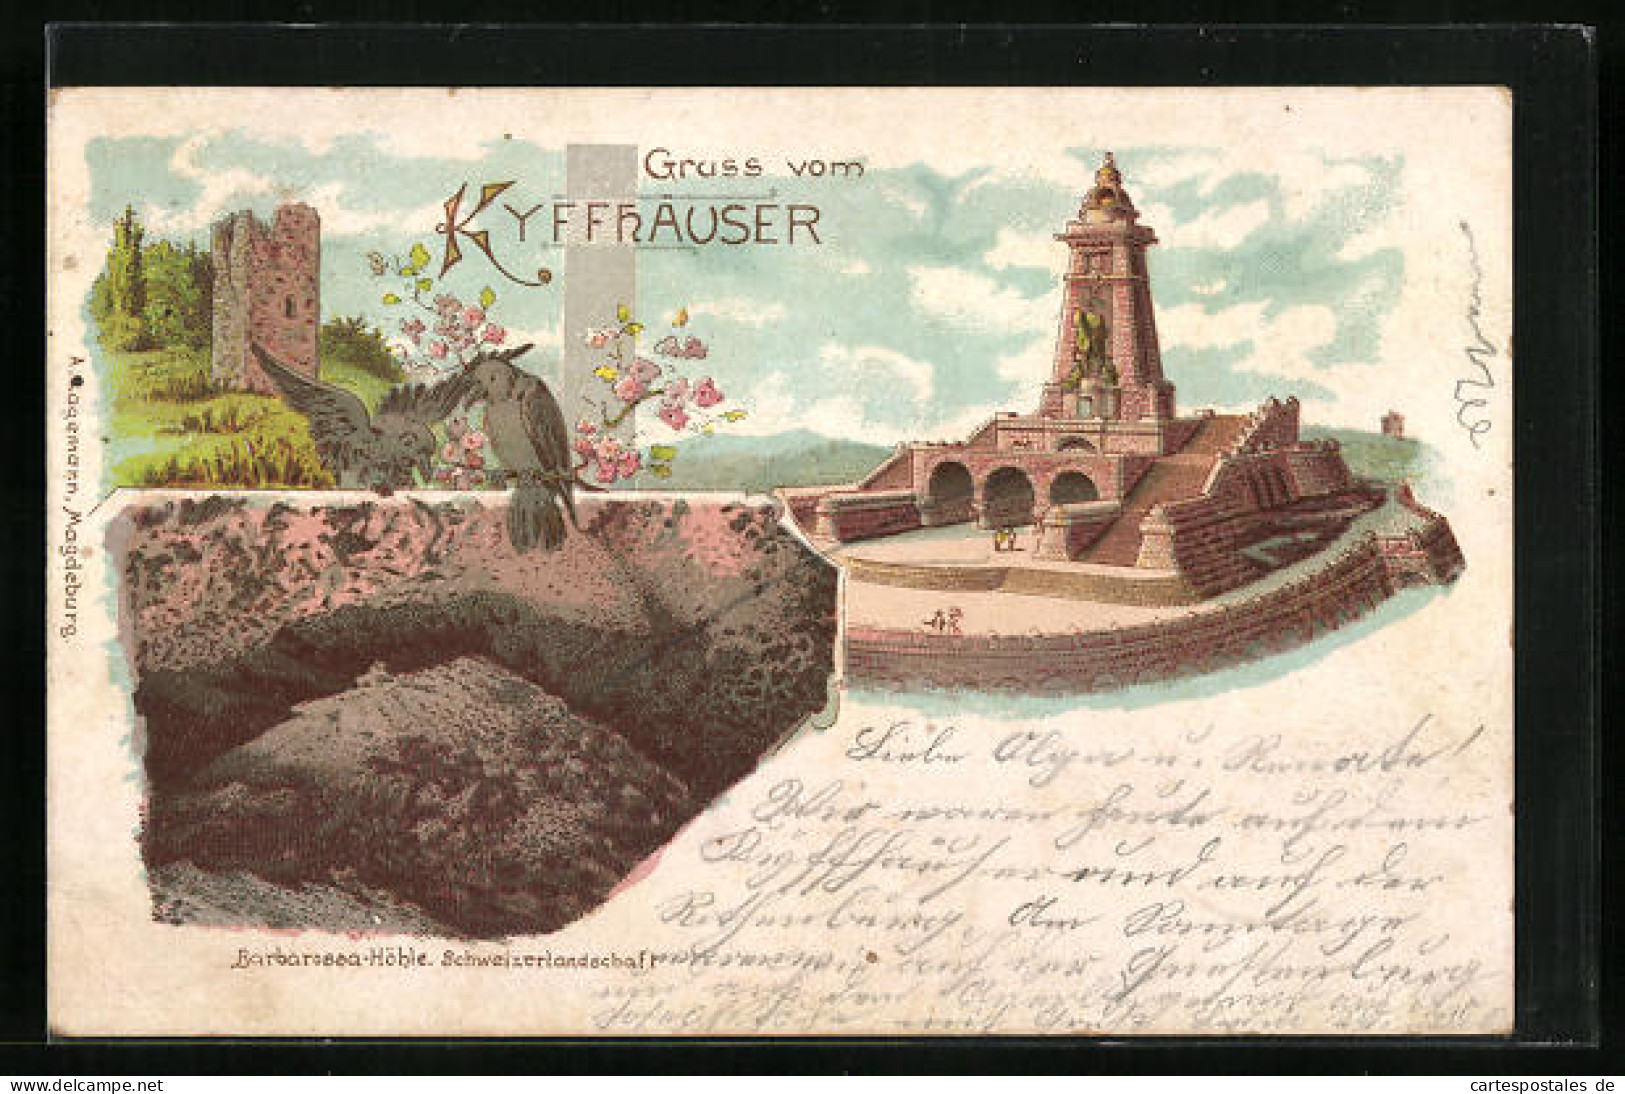 Lithographie Kyffhäuser, Kyffhäuserdenkmal, Turm, Barbarossahöhle Schweizerlandschaft  - Kyffhäuser